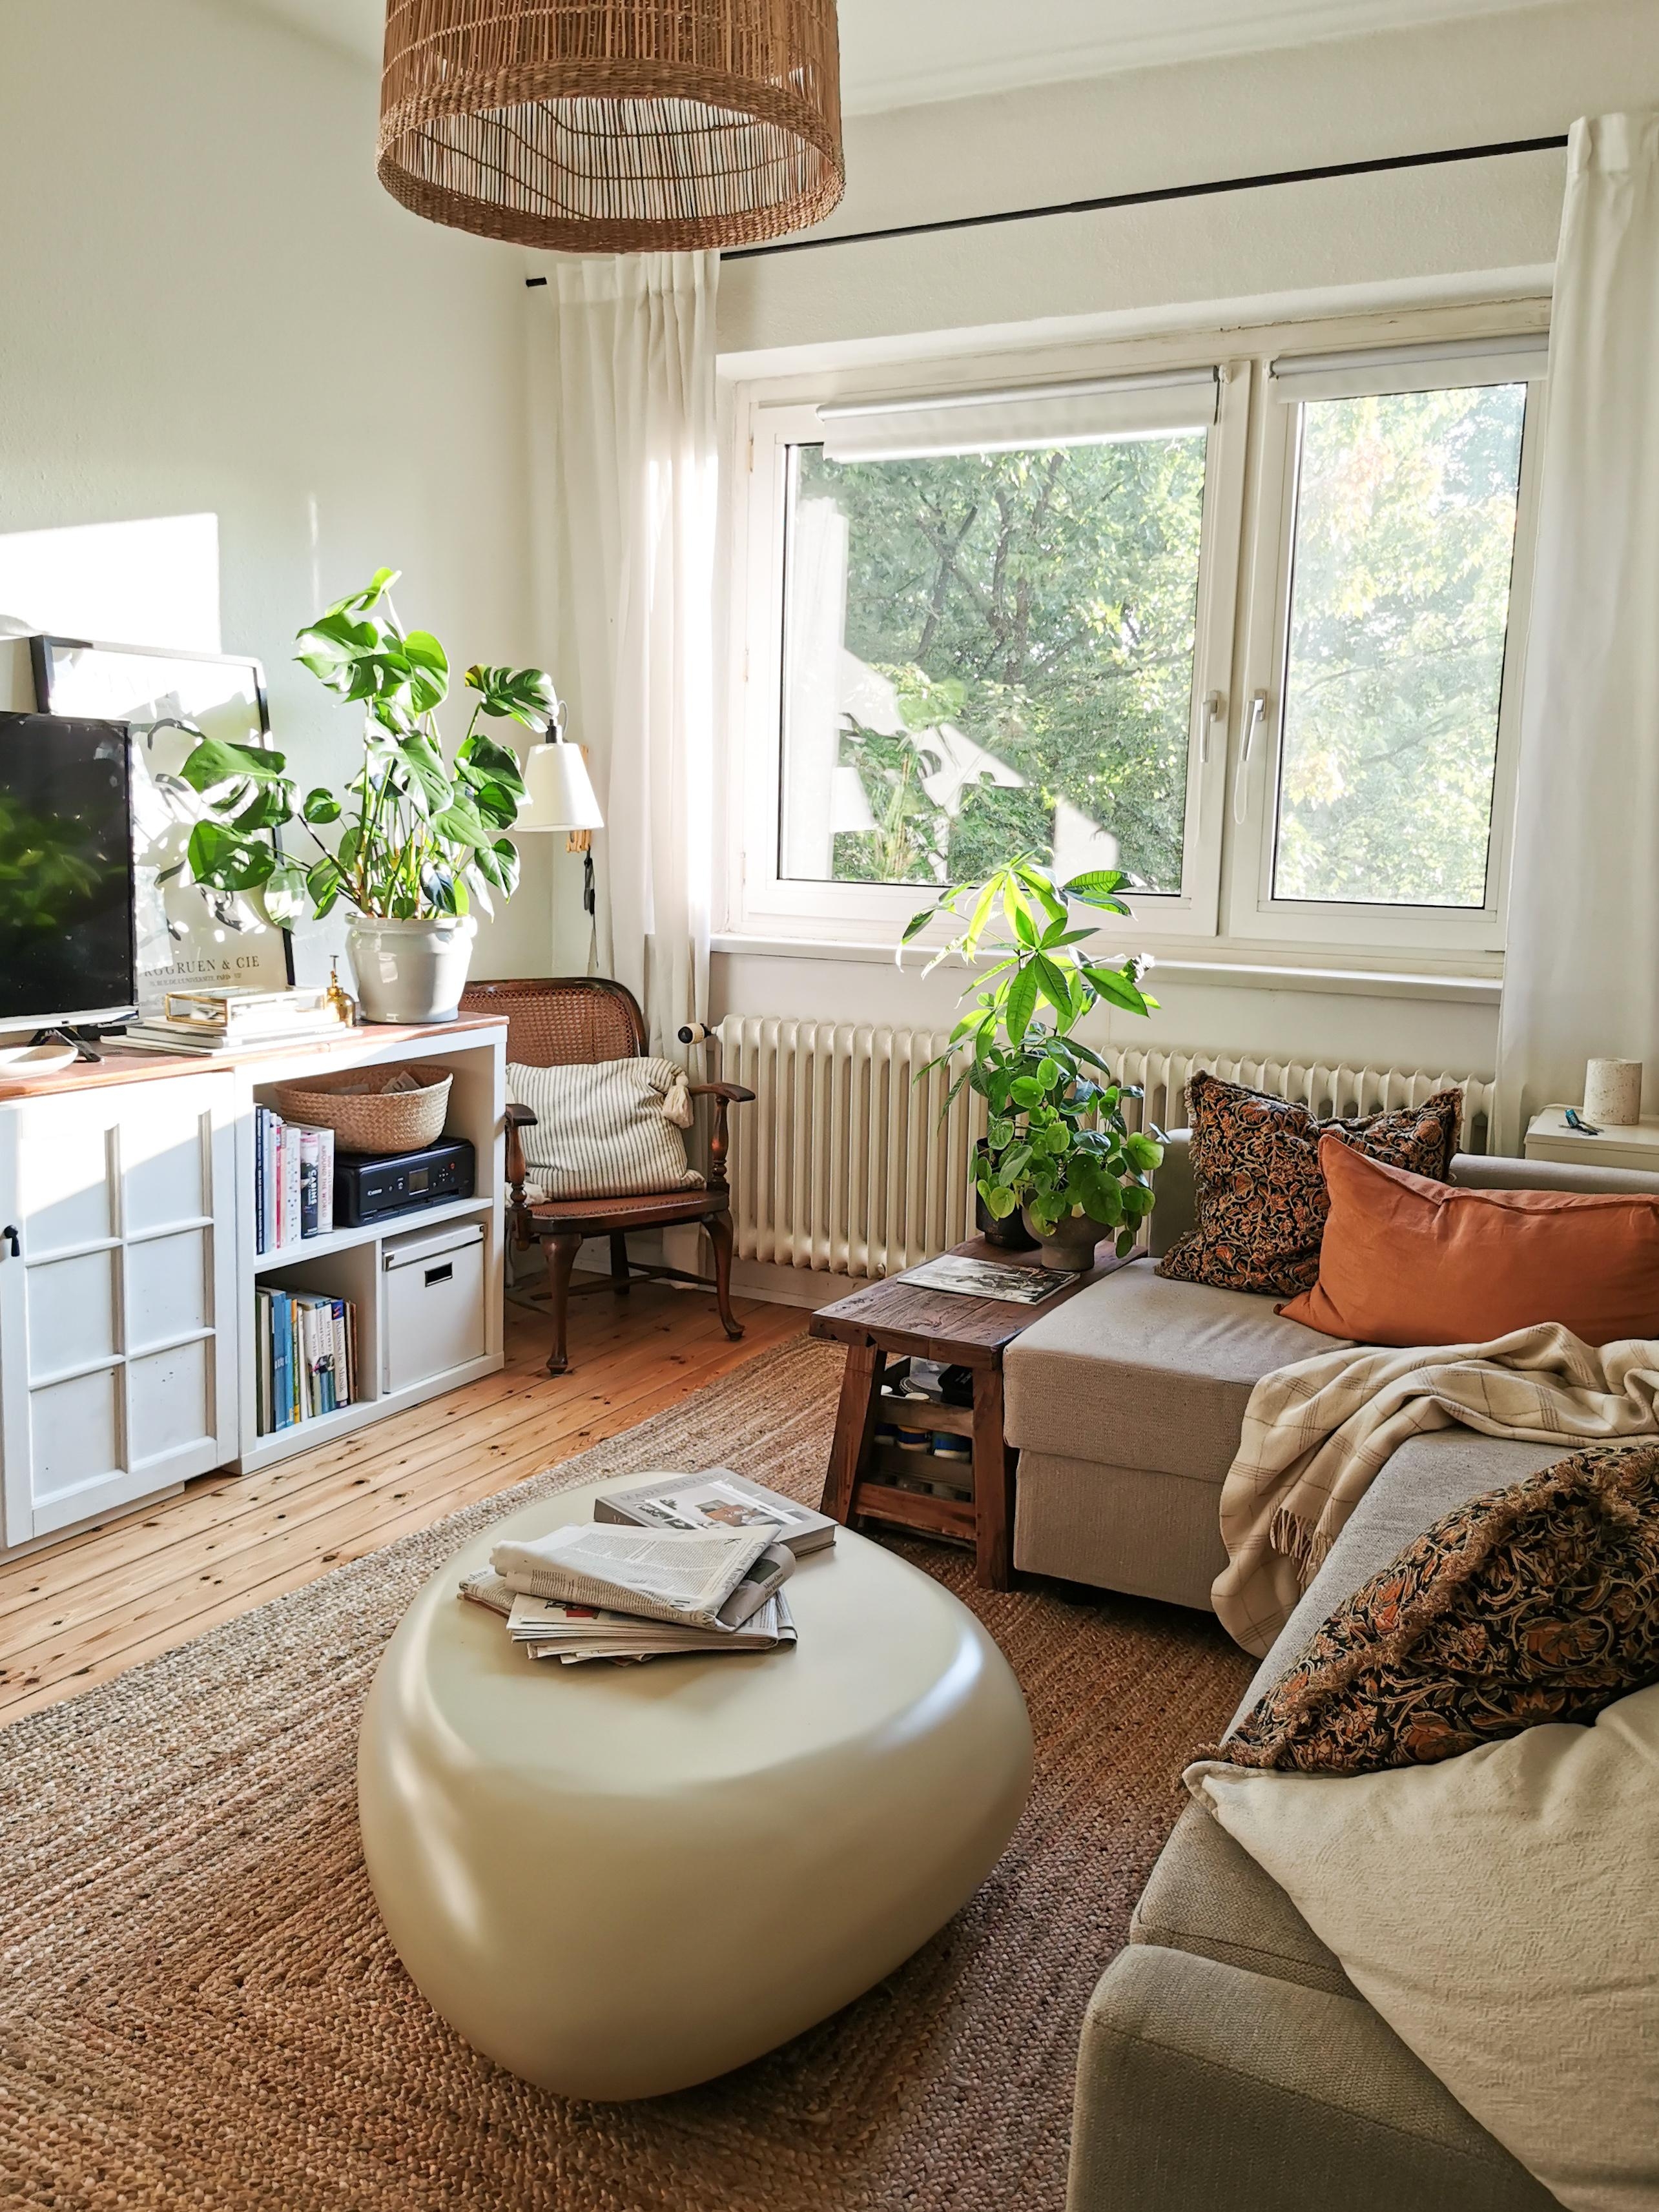 Guten Morgen und schönes Wochenende! ☀️ #wohnzimmer #livingroom #pflanzen #naturalliving #vintage #boho